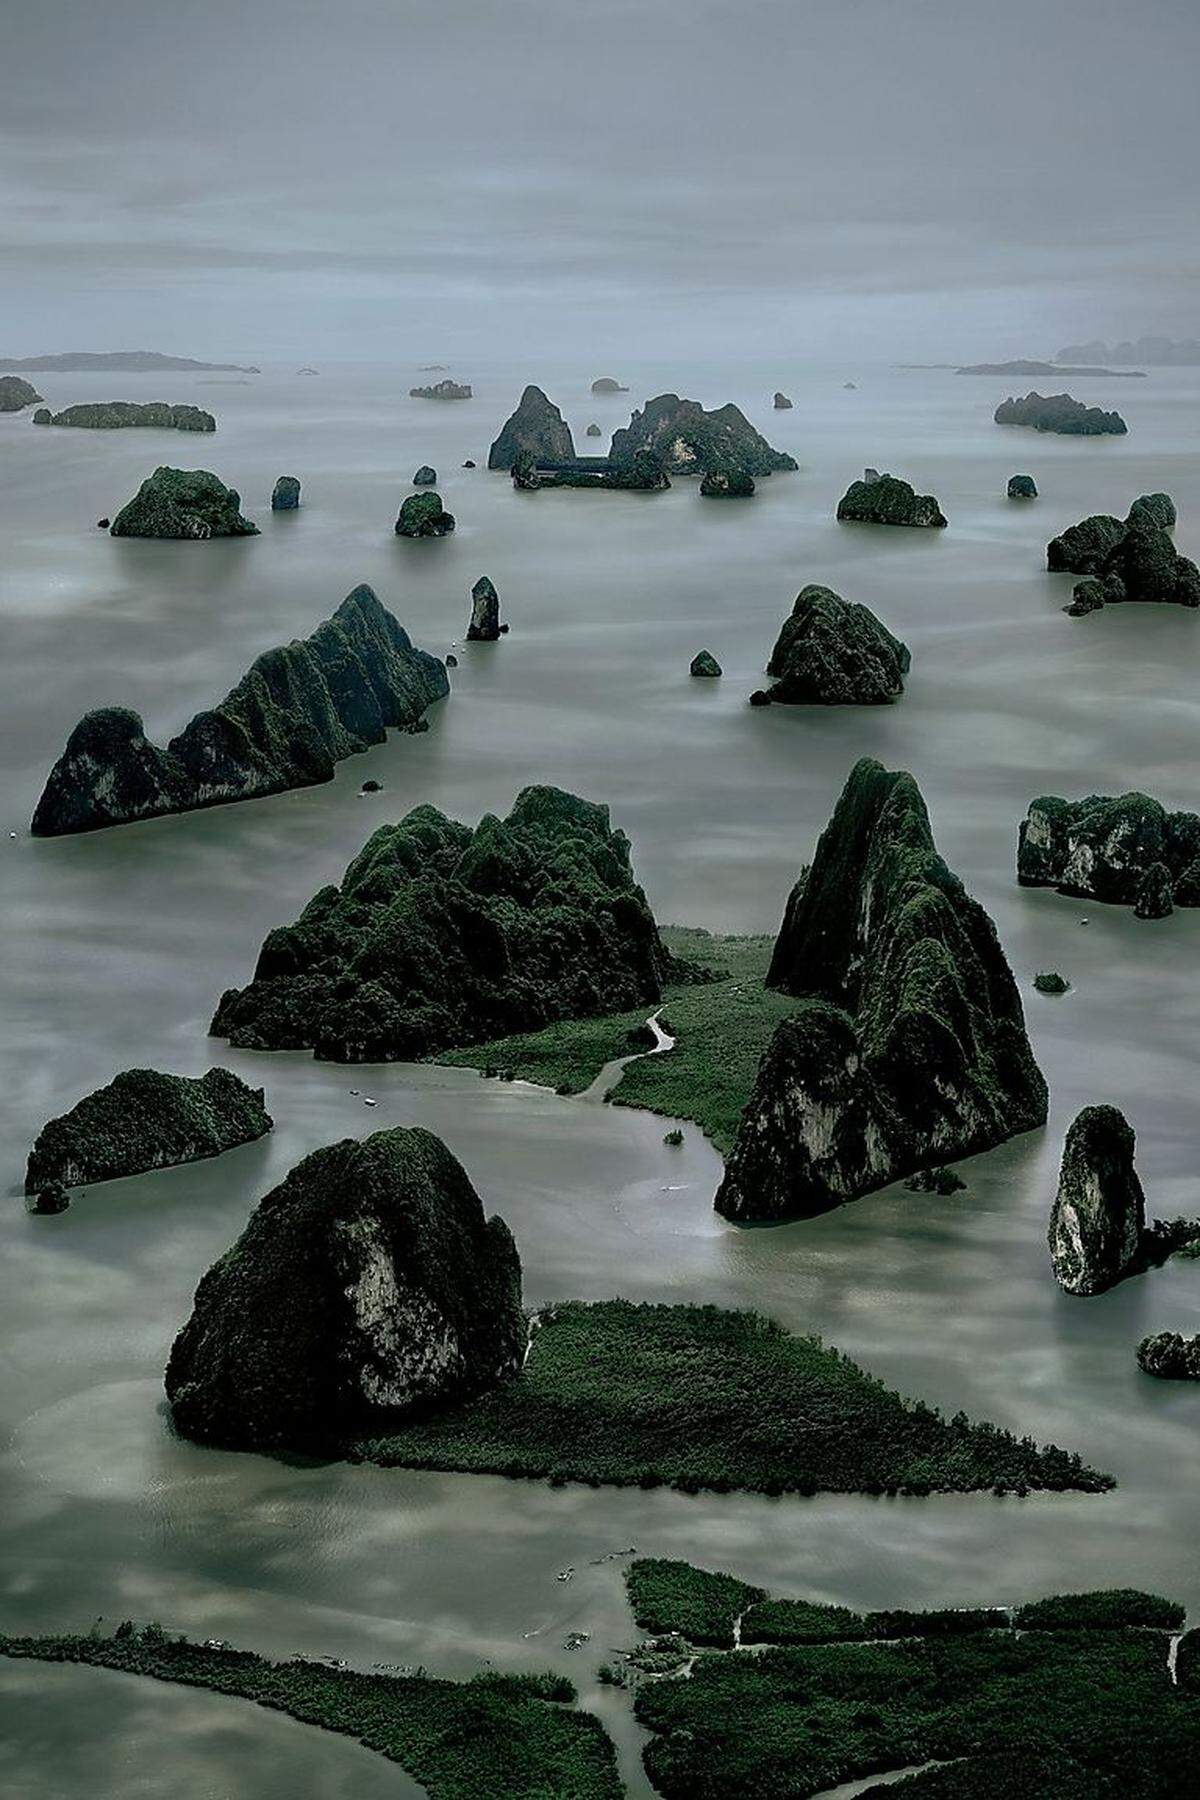 Die "James Bond Islands" des 60-jährigen deutschen Fotografie-Superstars Andreas Gursky dominieren den Hauptraum des Kunstforums. Gursky hat die thailändischen Inseln aus der Helikopter-Perspektive fotografiert, die Bilder dann aber mit massiven Eingriffen verändert.Andreas Gursky: James Bond Island II, 2007